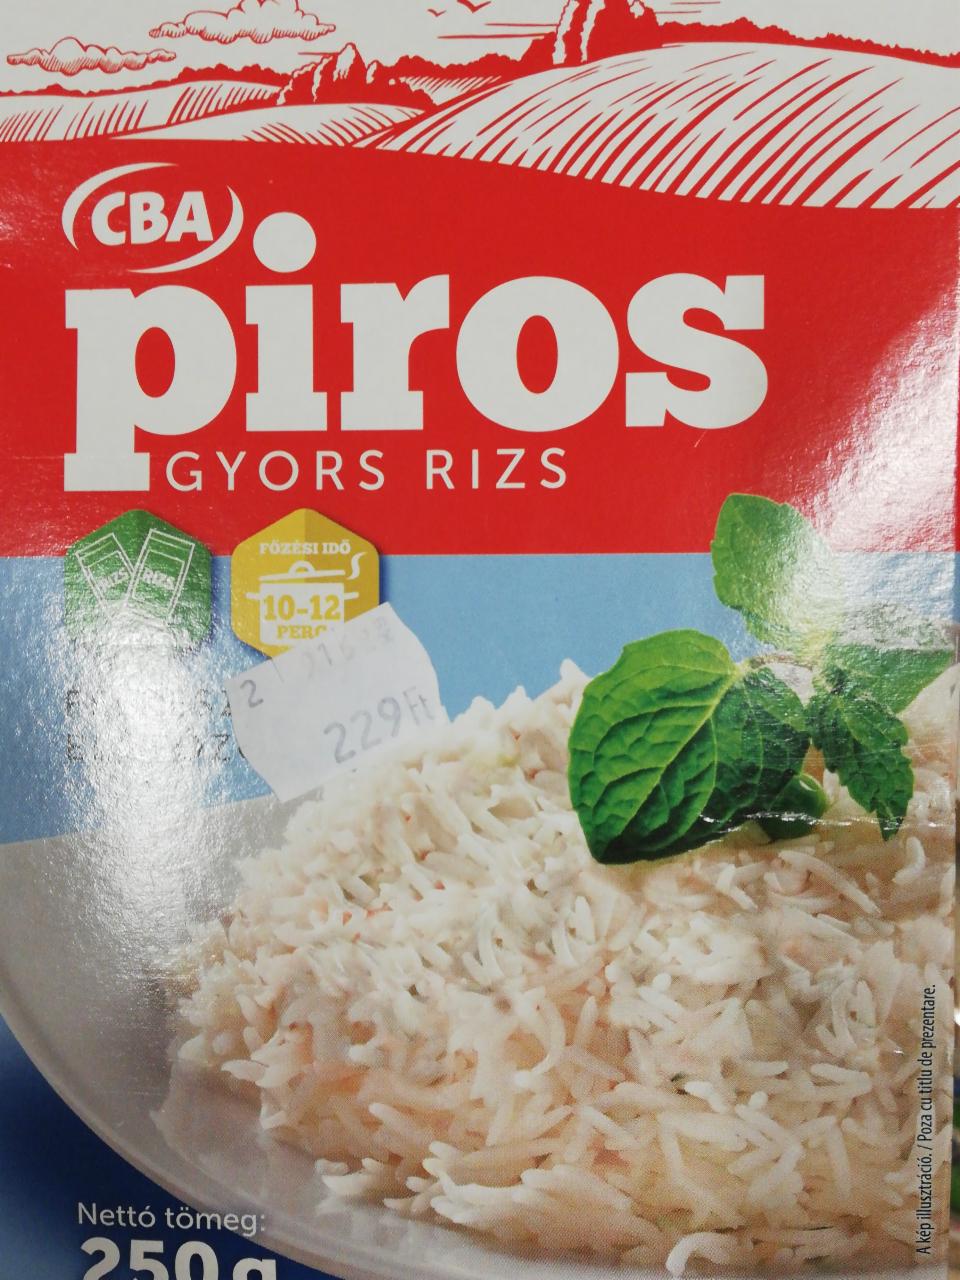 Képek - Félkész előfőzött gyors rizs CBA Piros 